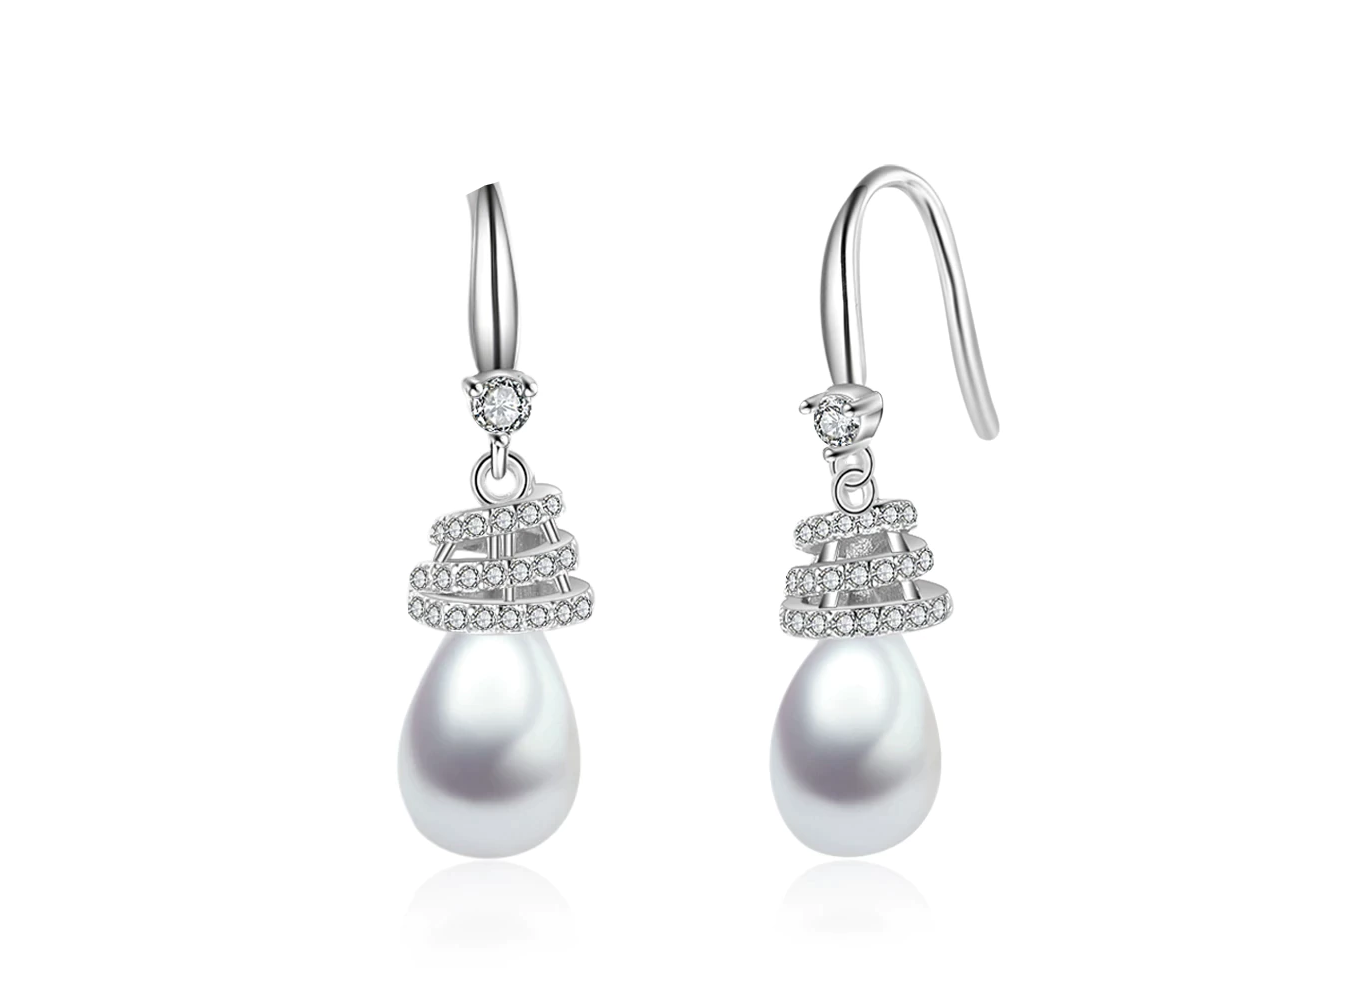 Women's Sterling Silver Pearl Drop Earrings With Cubic Zirconia